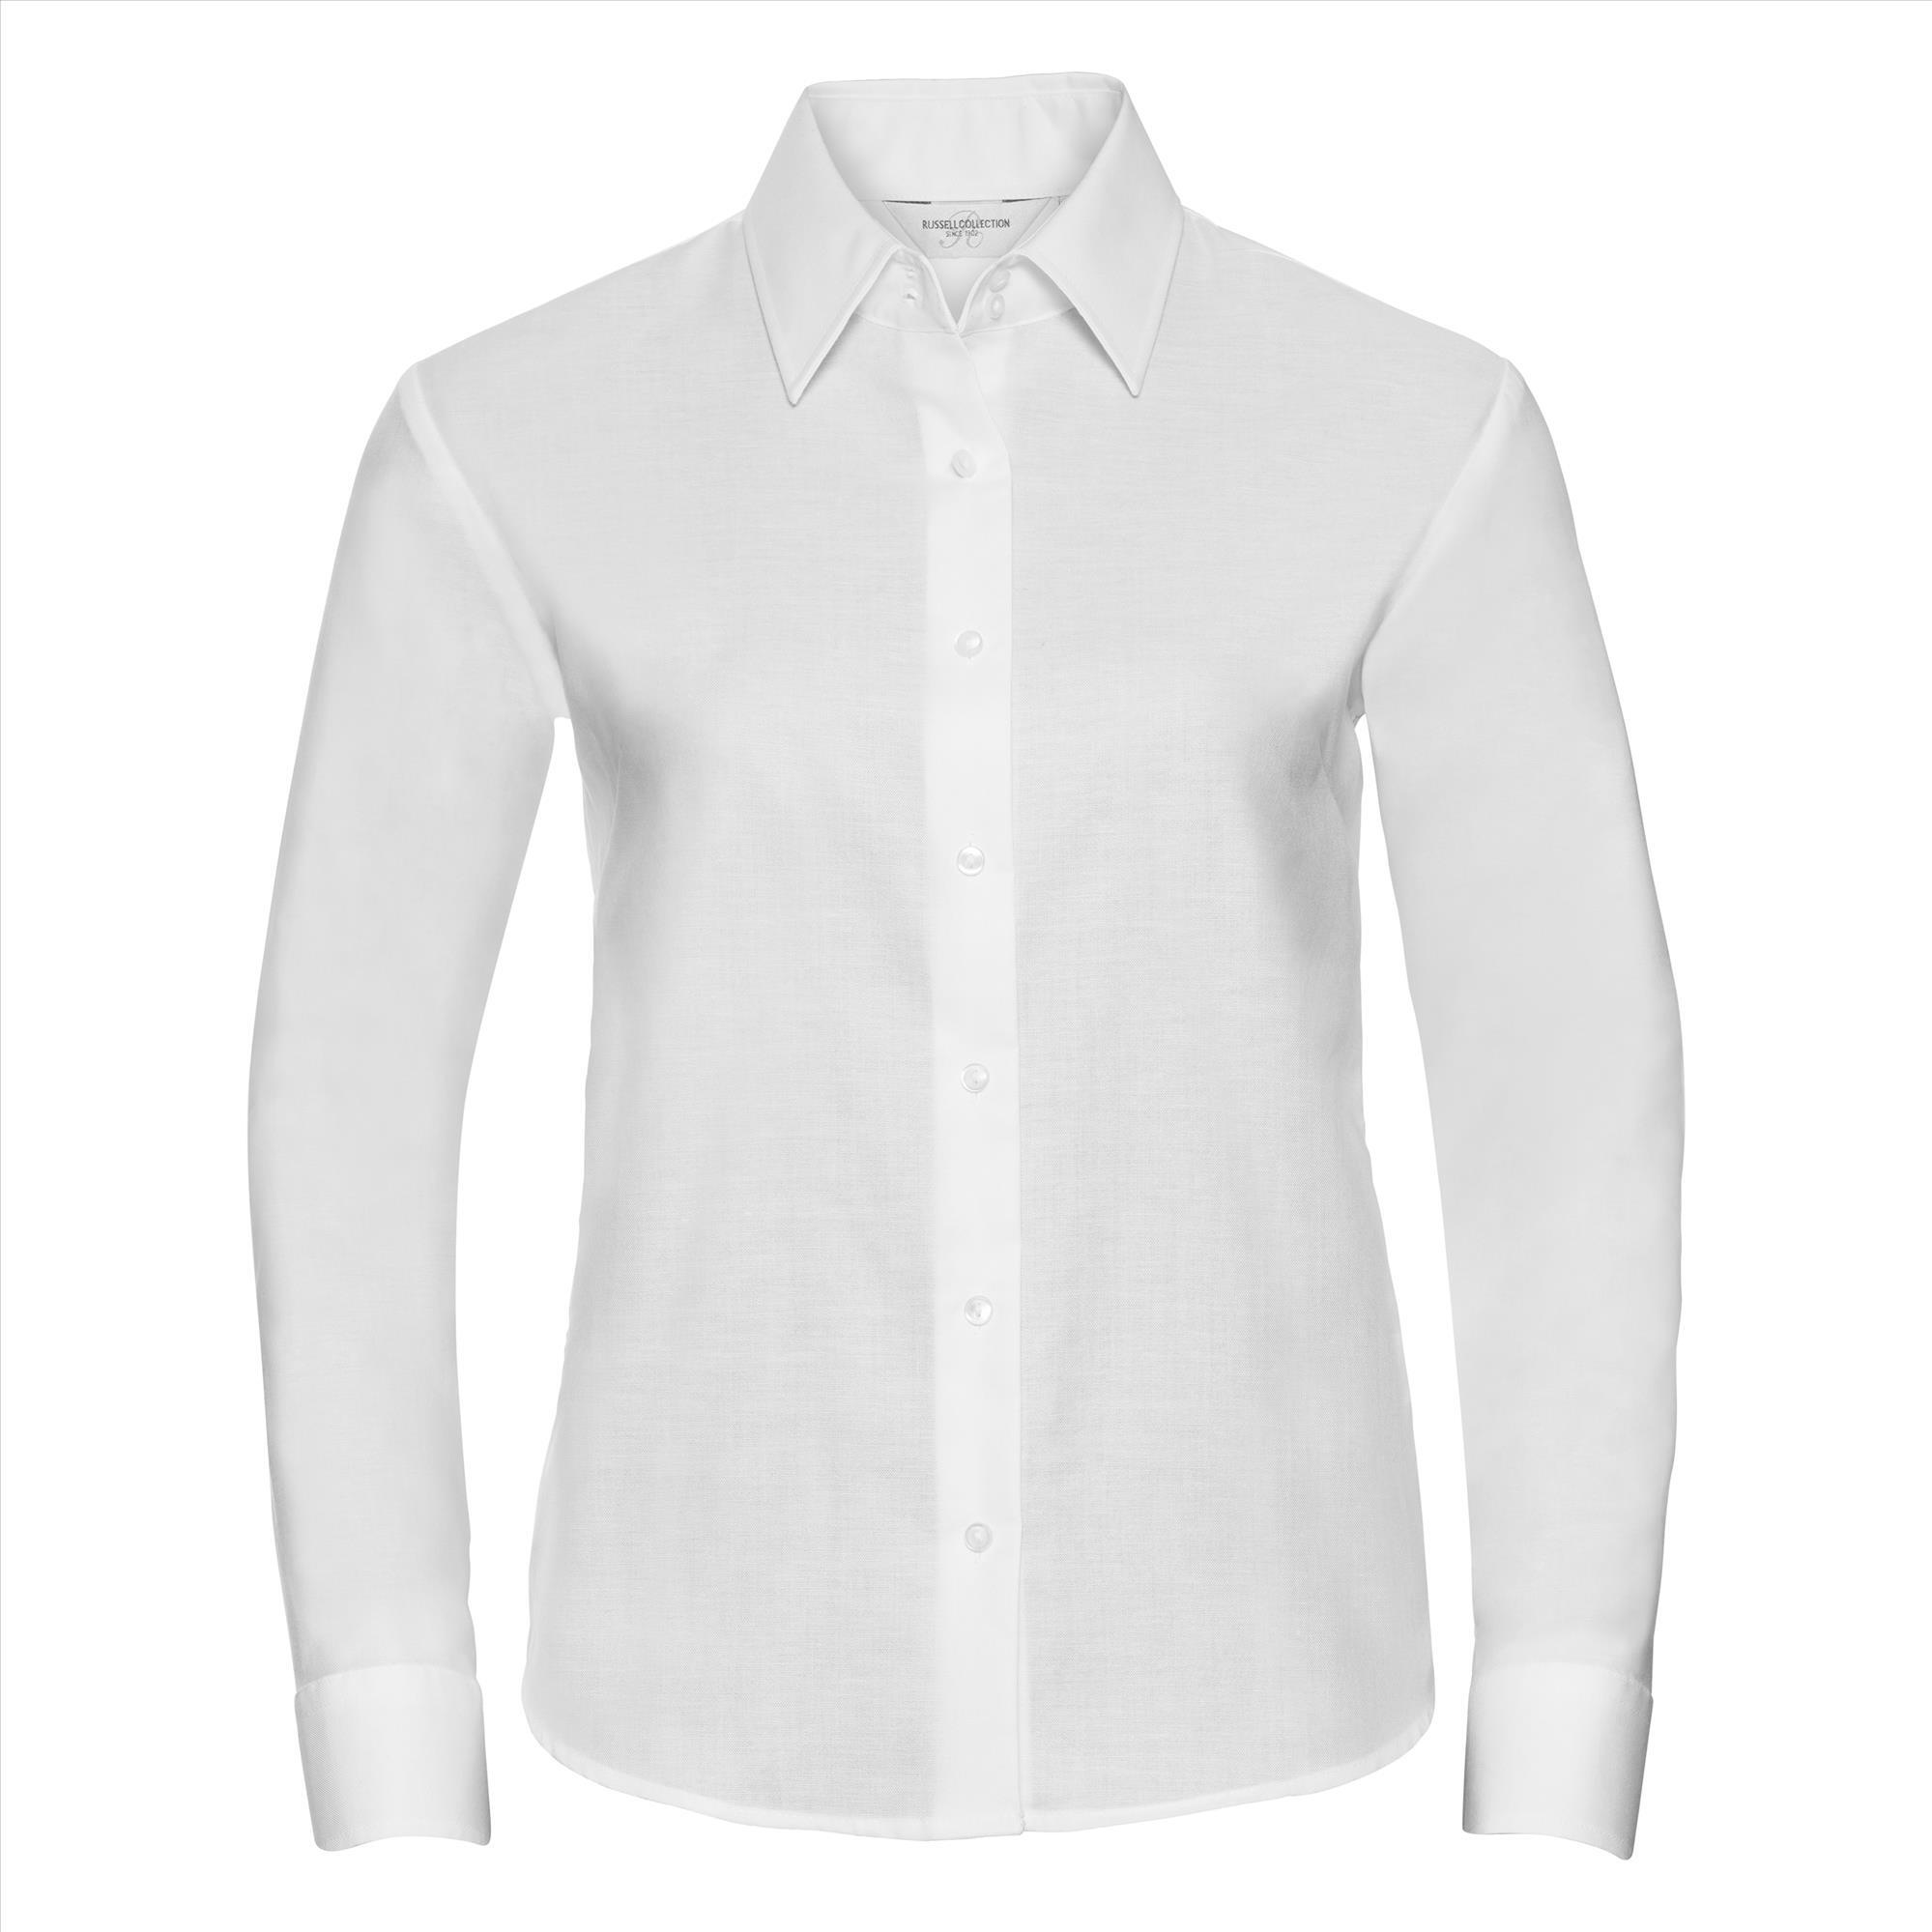 Getailleerde dames blouse wit te personaliseren bedrijfslogo